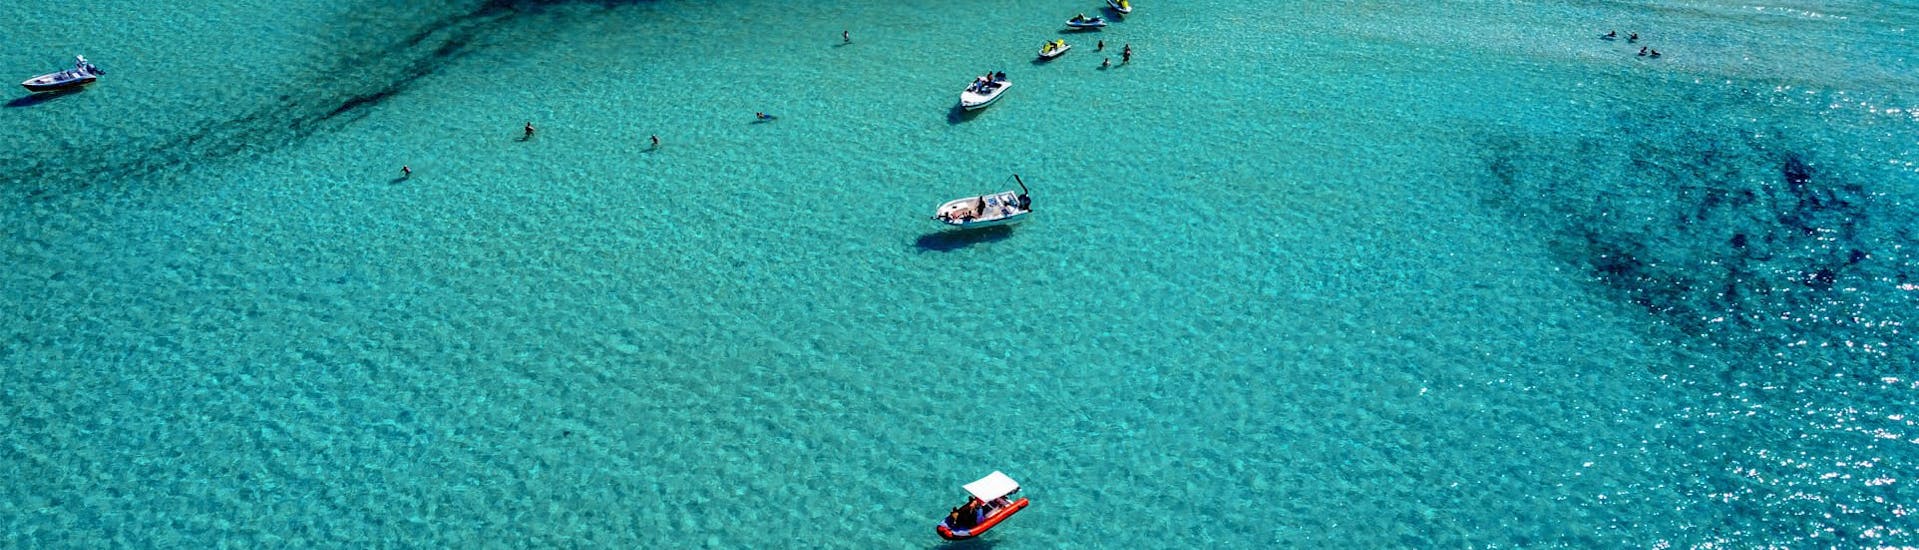 Jet ski et bateaux dans l'eau bleue lors d'une randonnée en jet ski à Balos depuis Kissamos avec Kissamos Sea Sports.